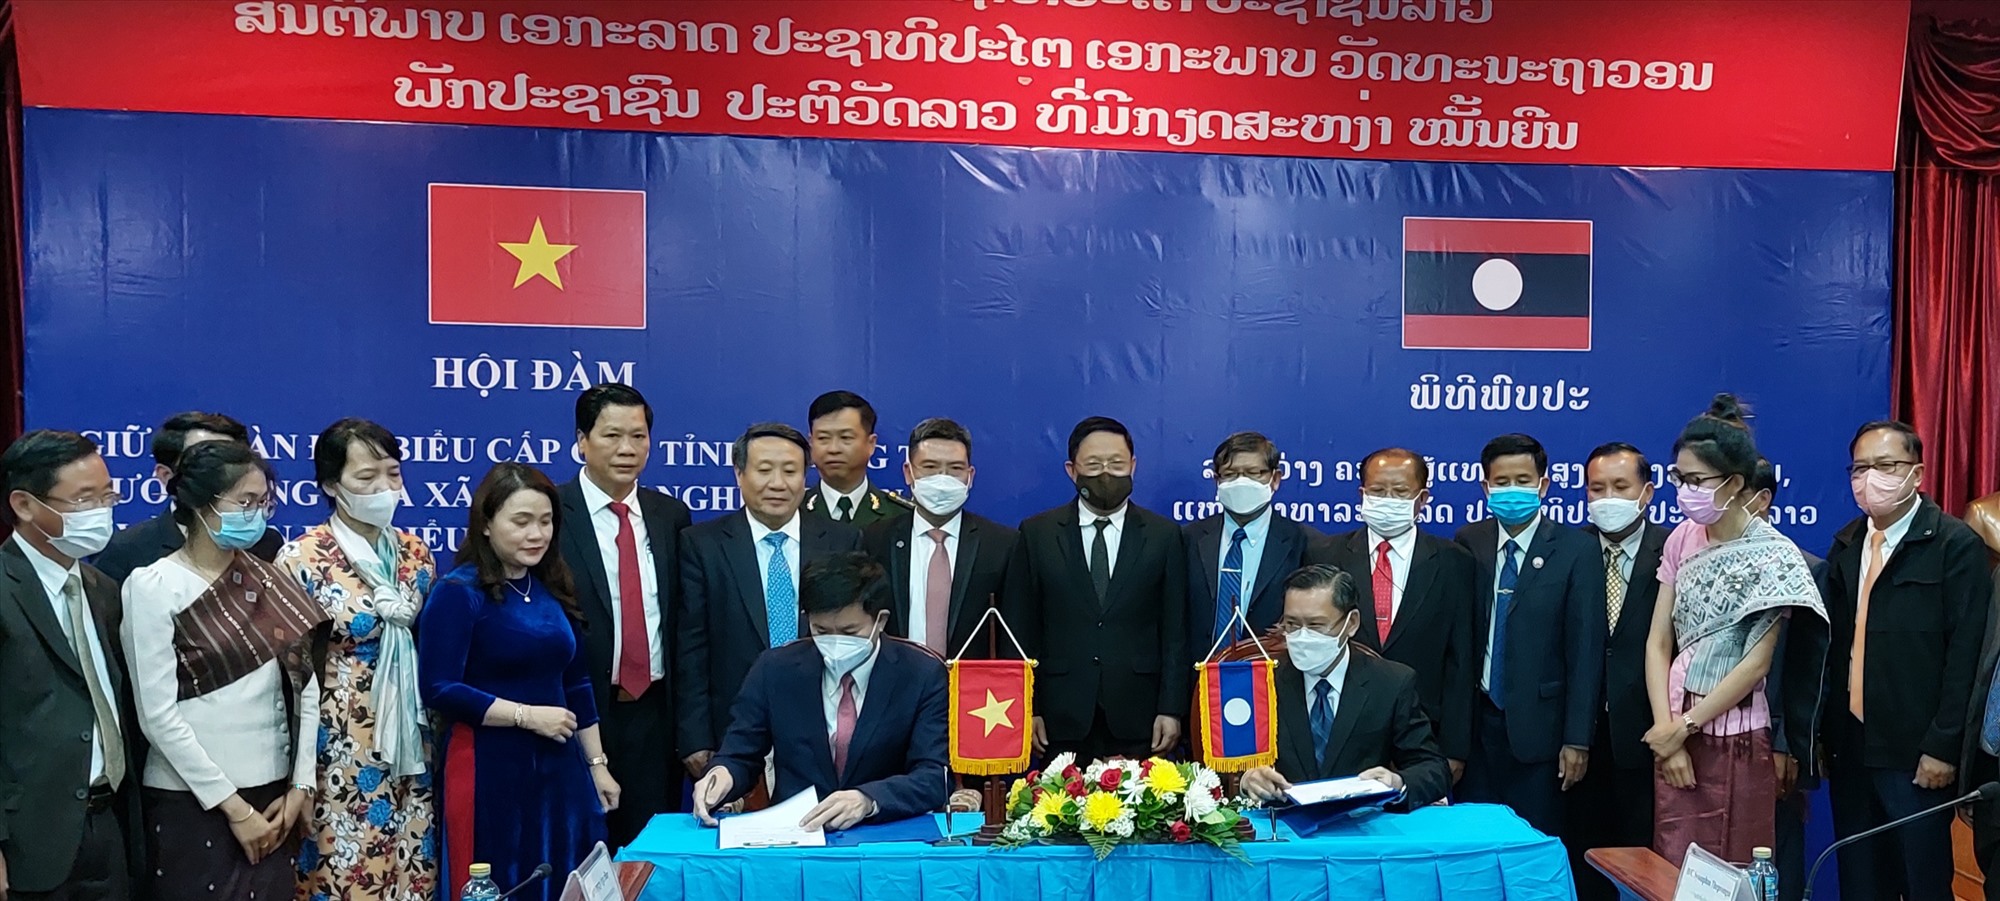 Ký kết biên bản hợp tác giữa hai tỉnh Quảng Trị và Salavan năm 2022 - Ảnh: N.T.H